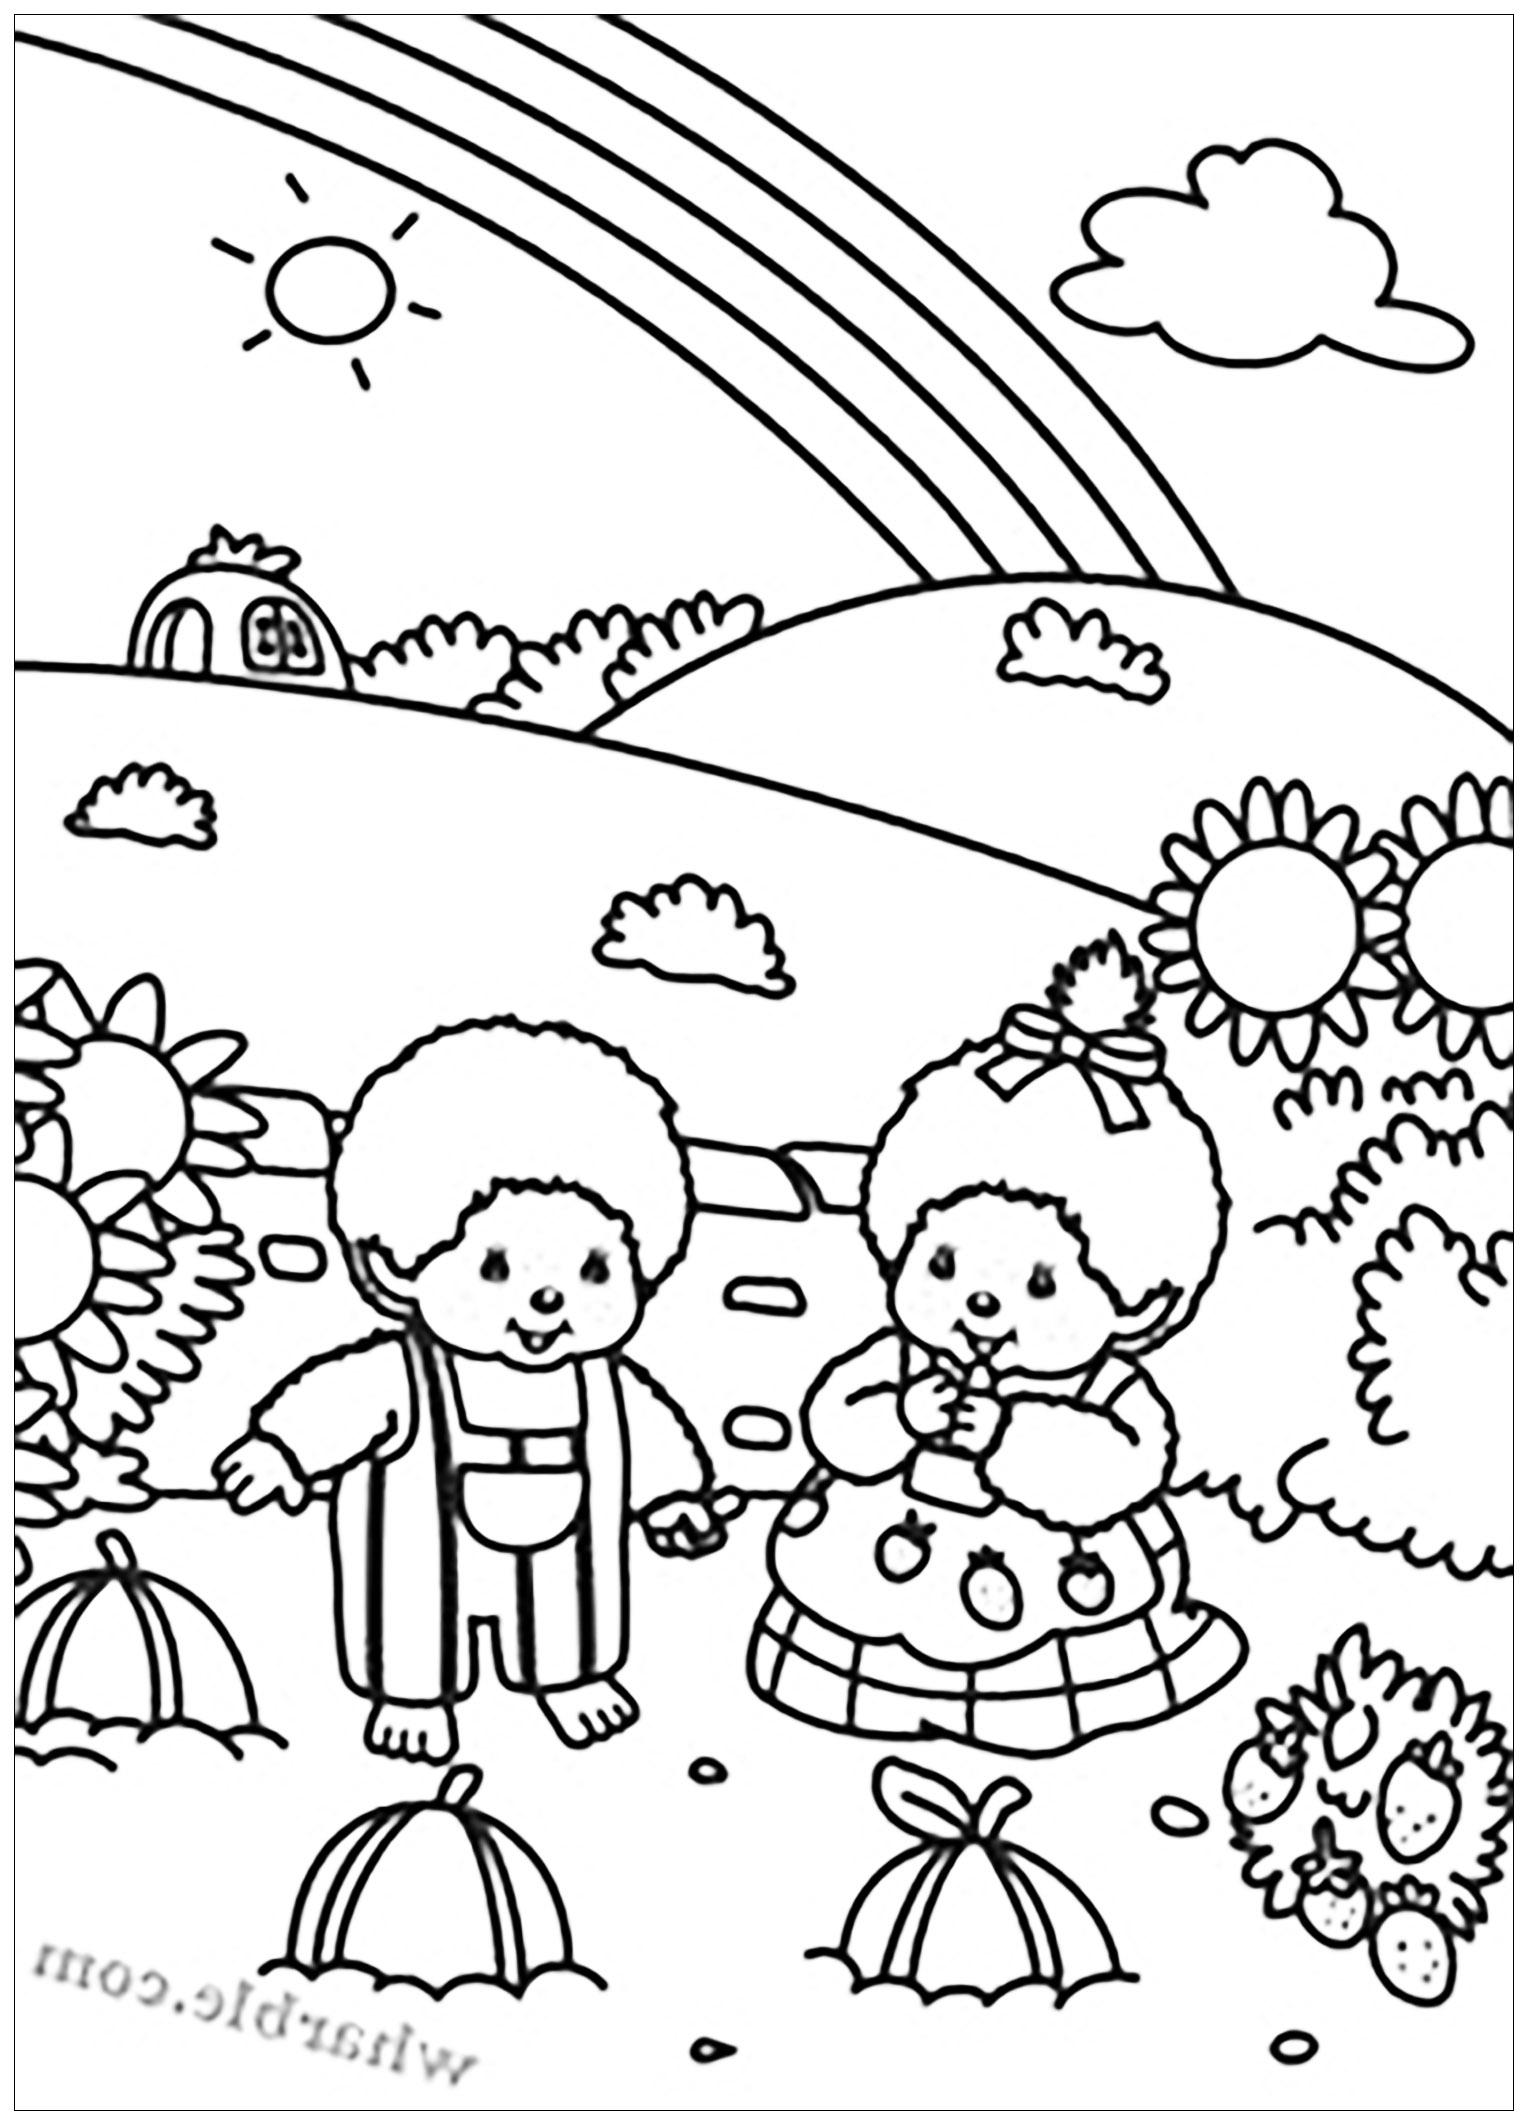 Kiki en un paisaje encantador. Dos personajes Kiki en un bonito campo, recogiendo fresas. Puedes ver este precioso arco iris?